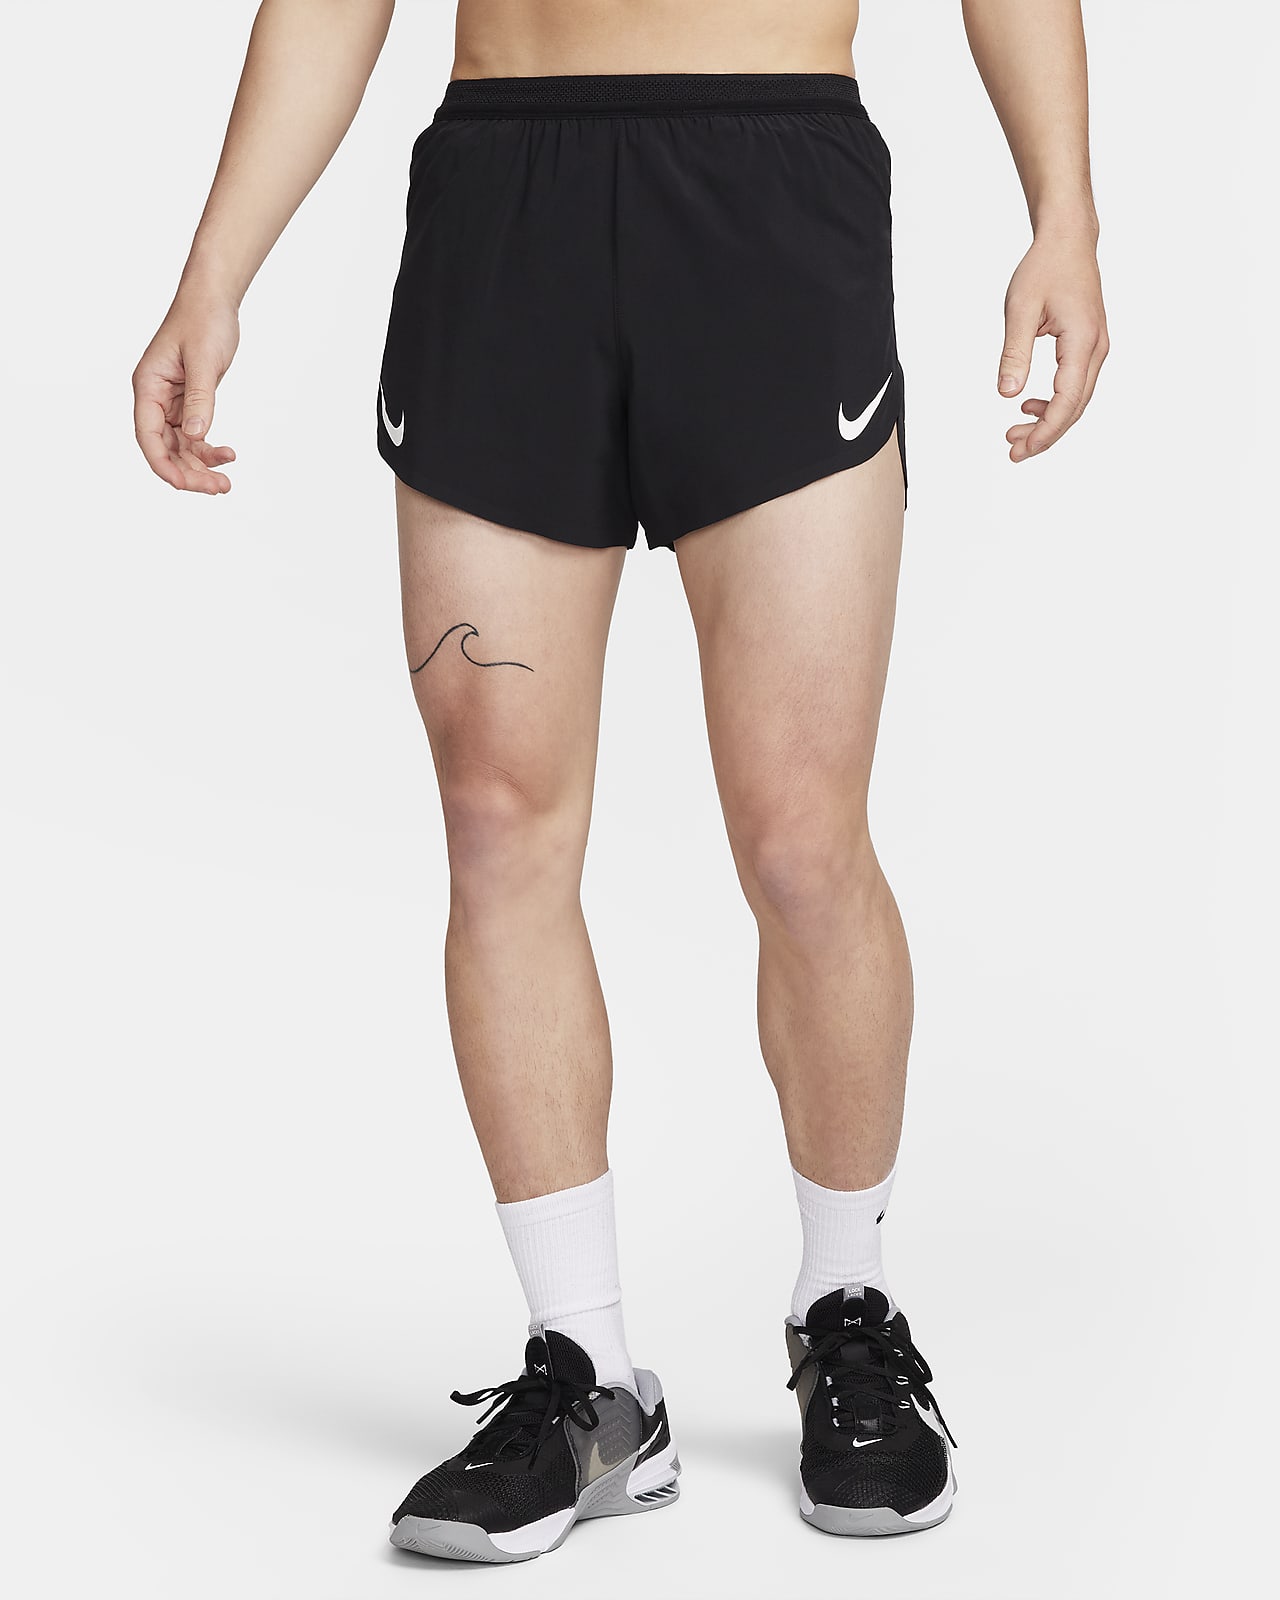 Used Nike AeroSwift Shorts